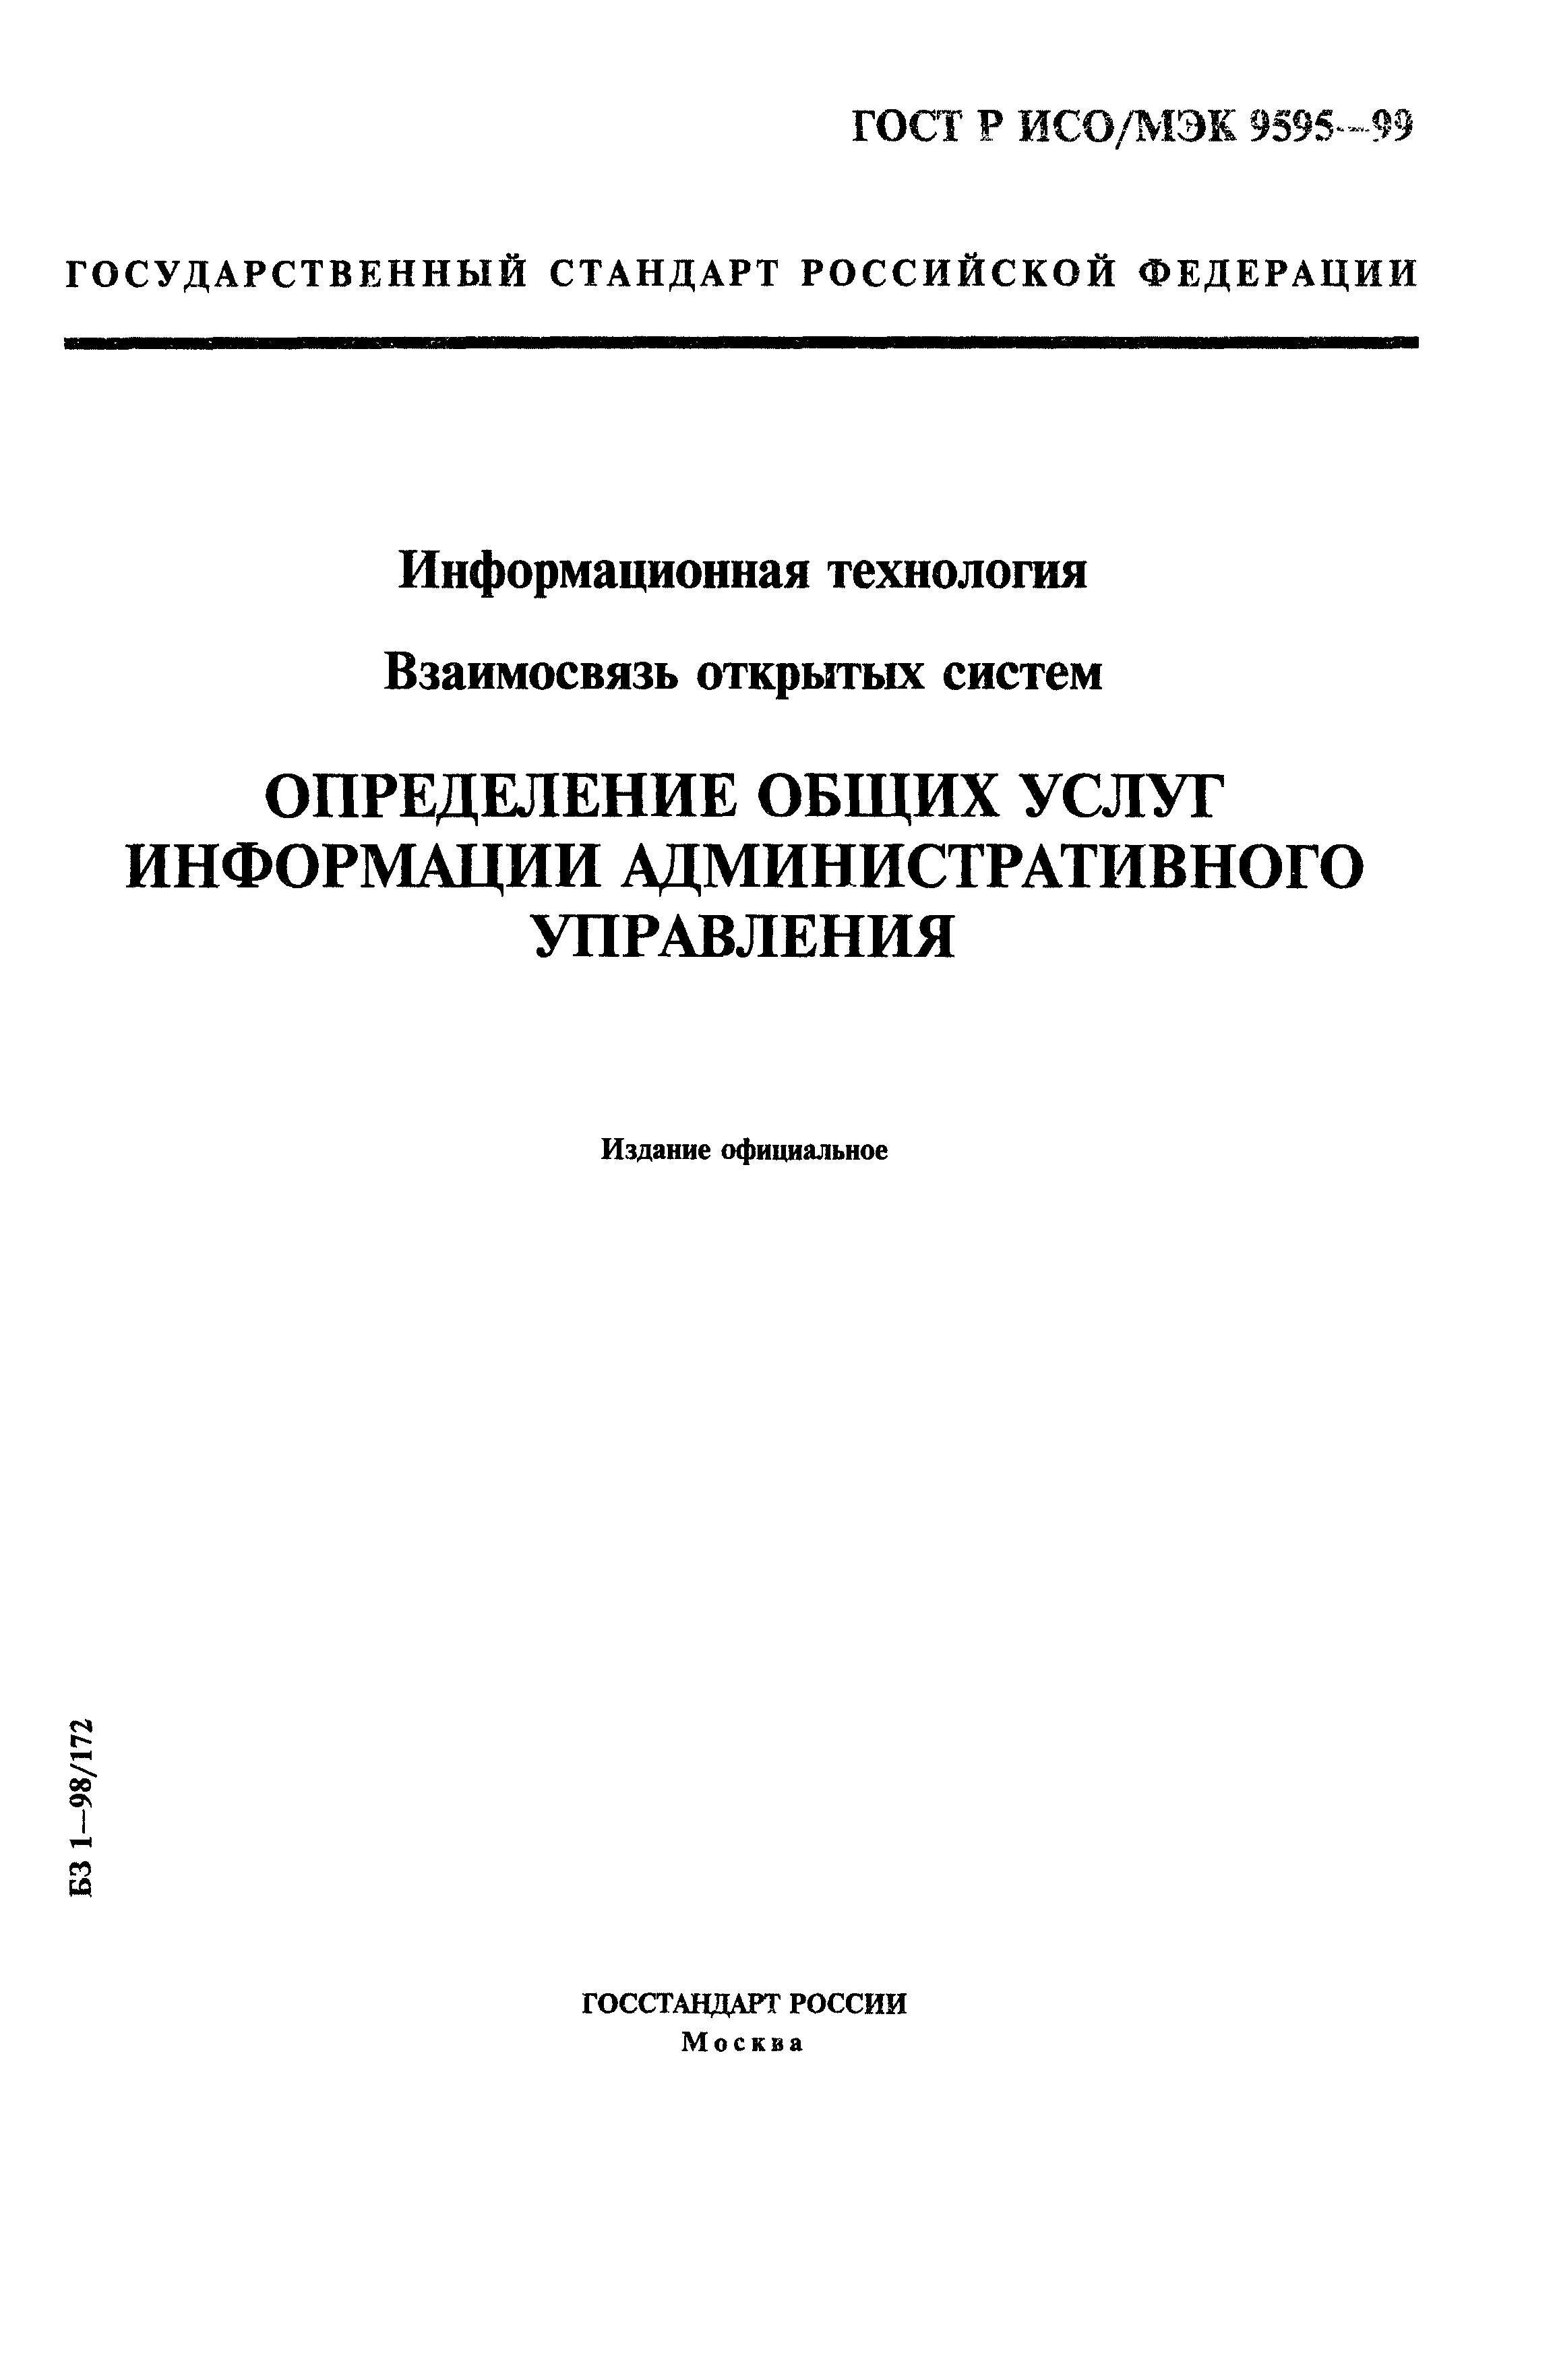 ГОСТ Р ИСО/МЭК 9595-99